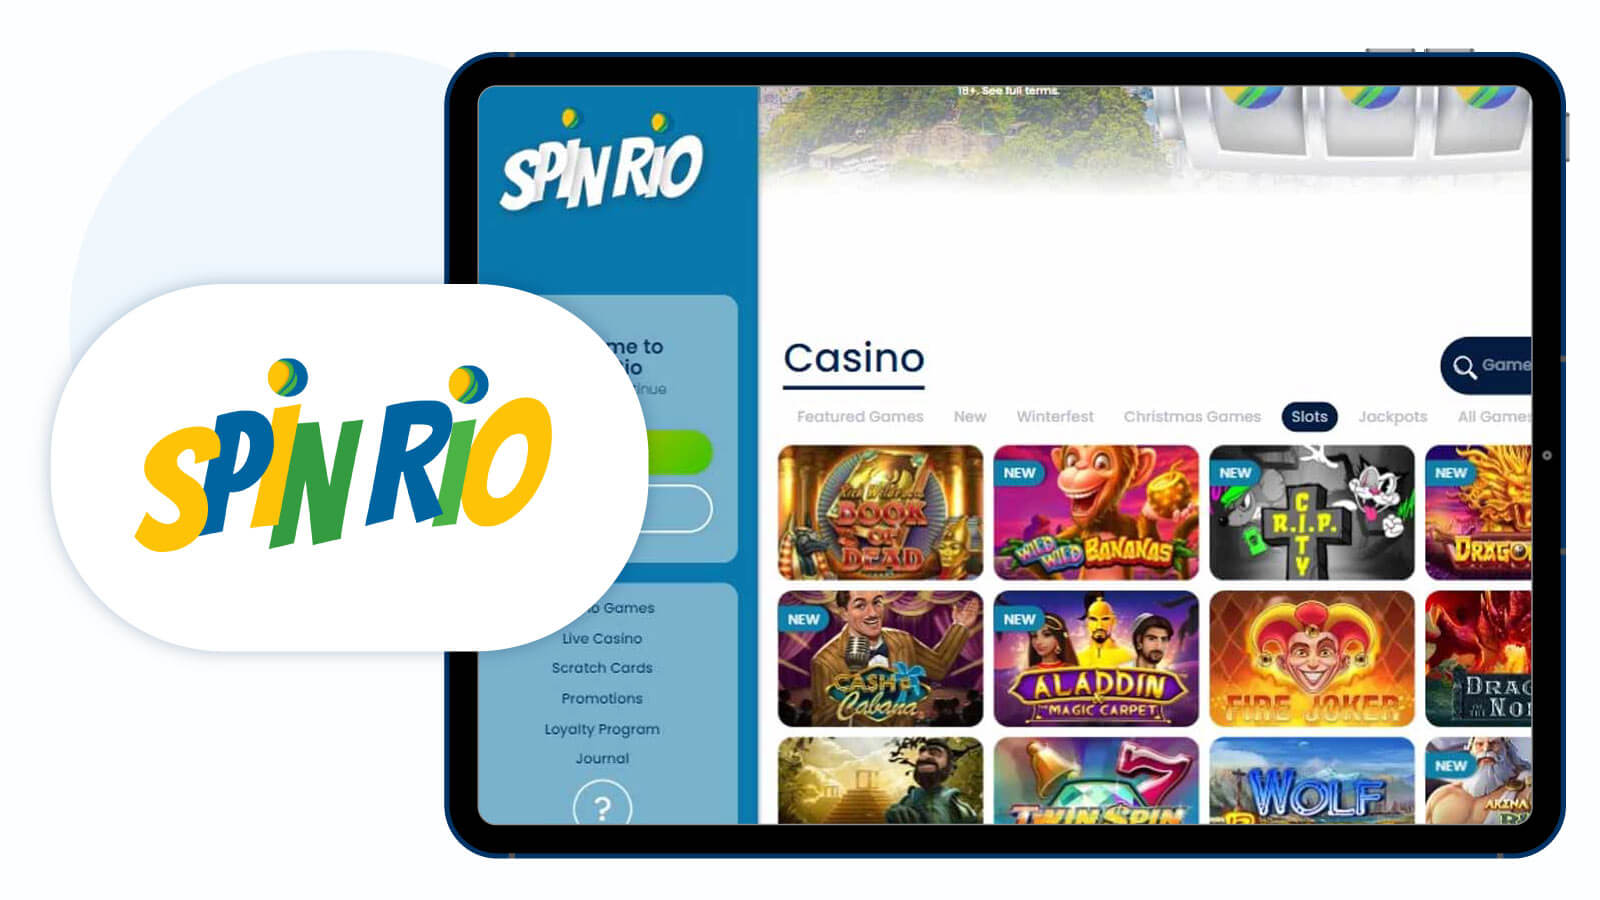 Spin-Rio-Casino